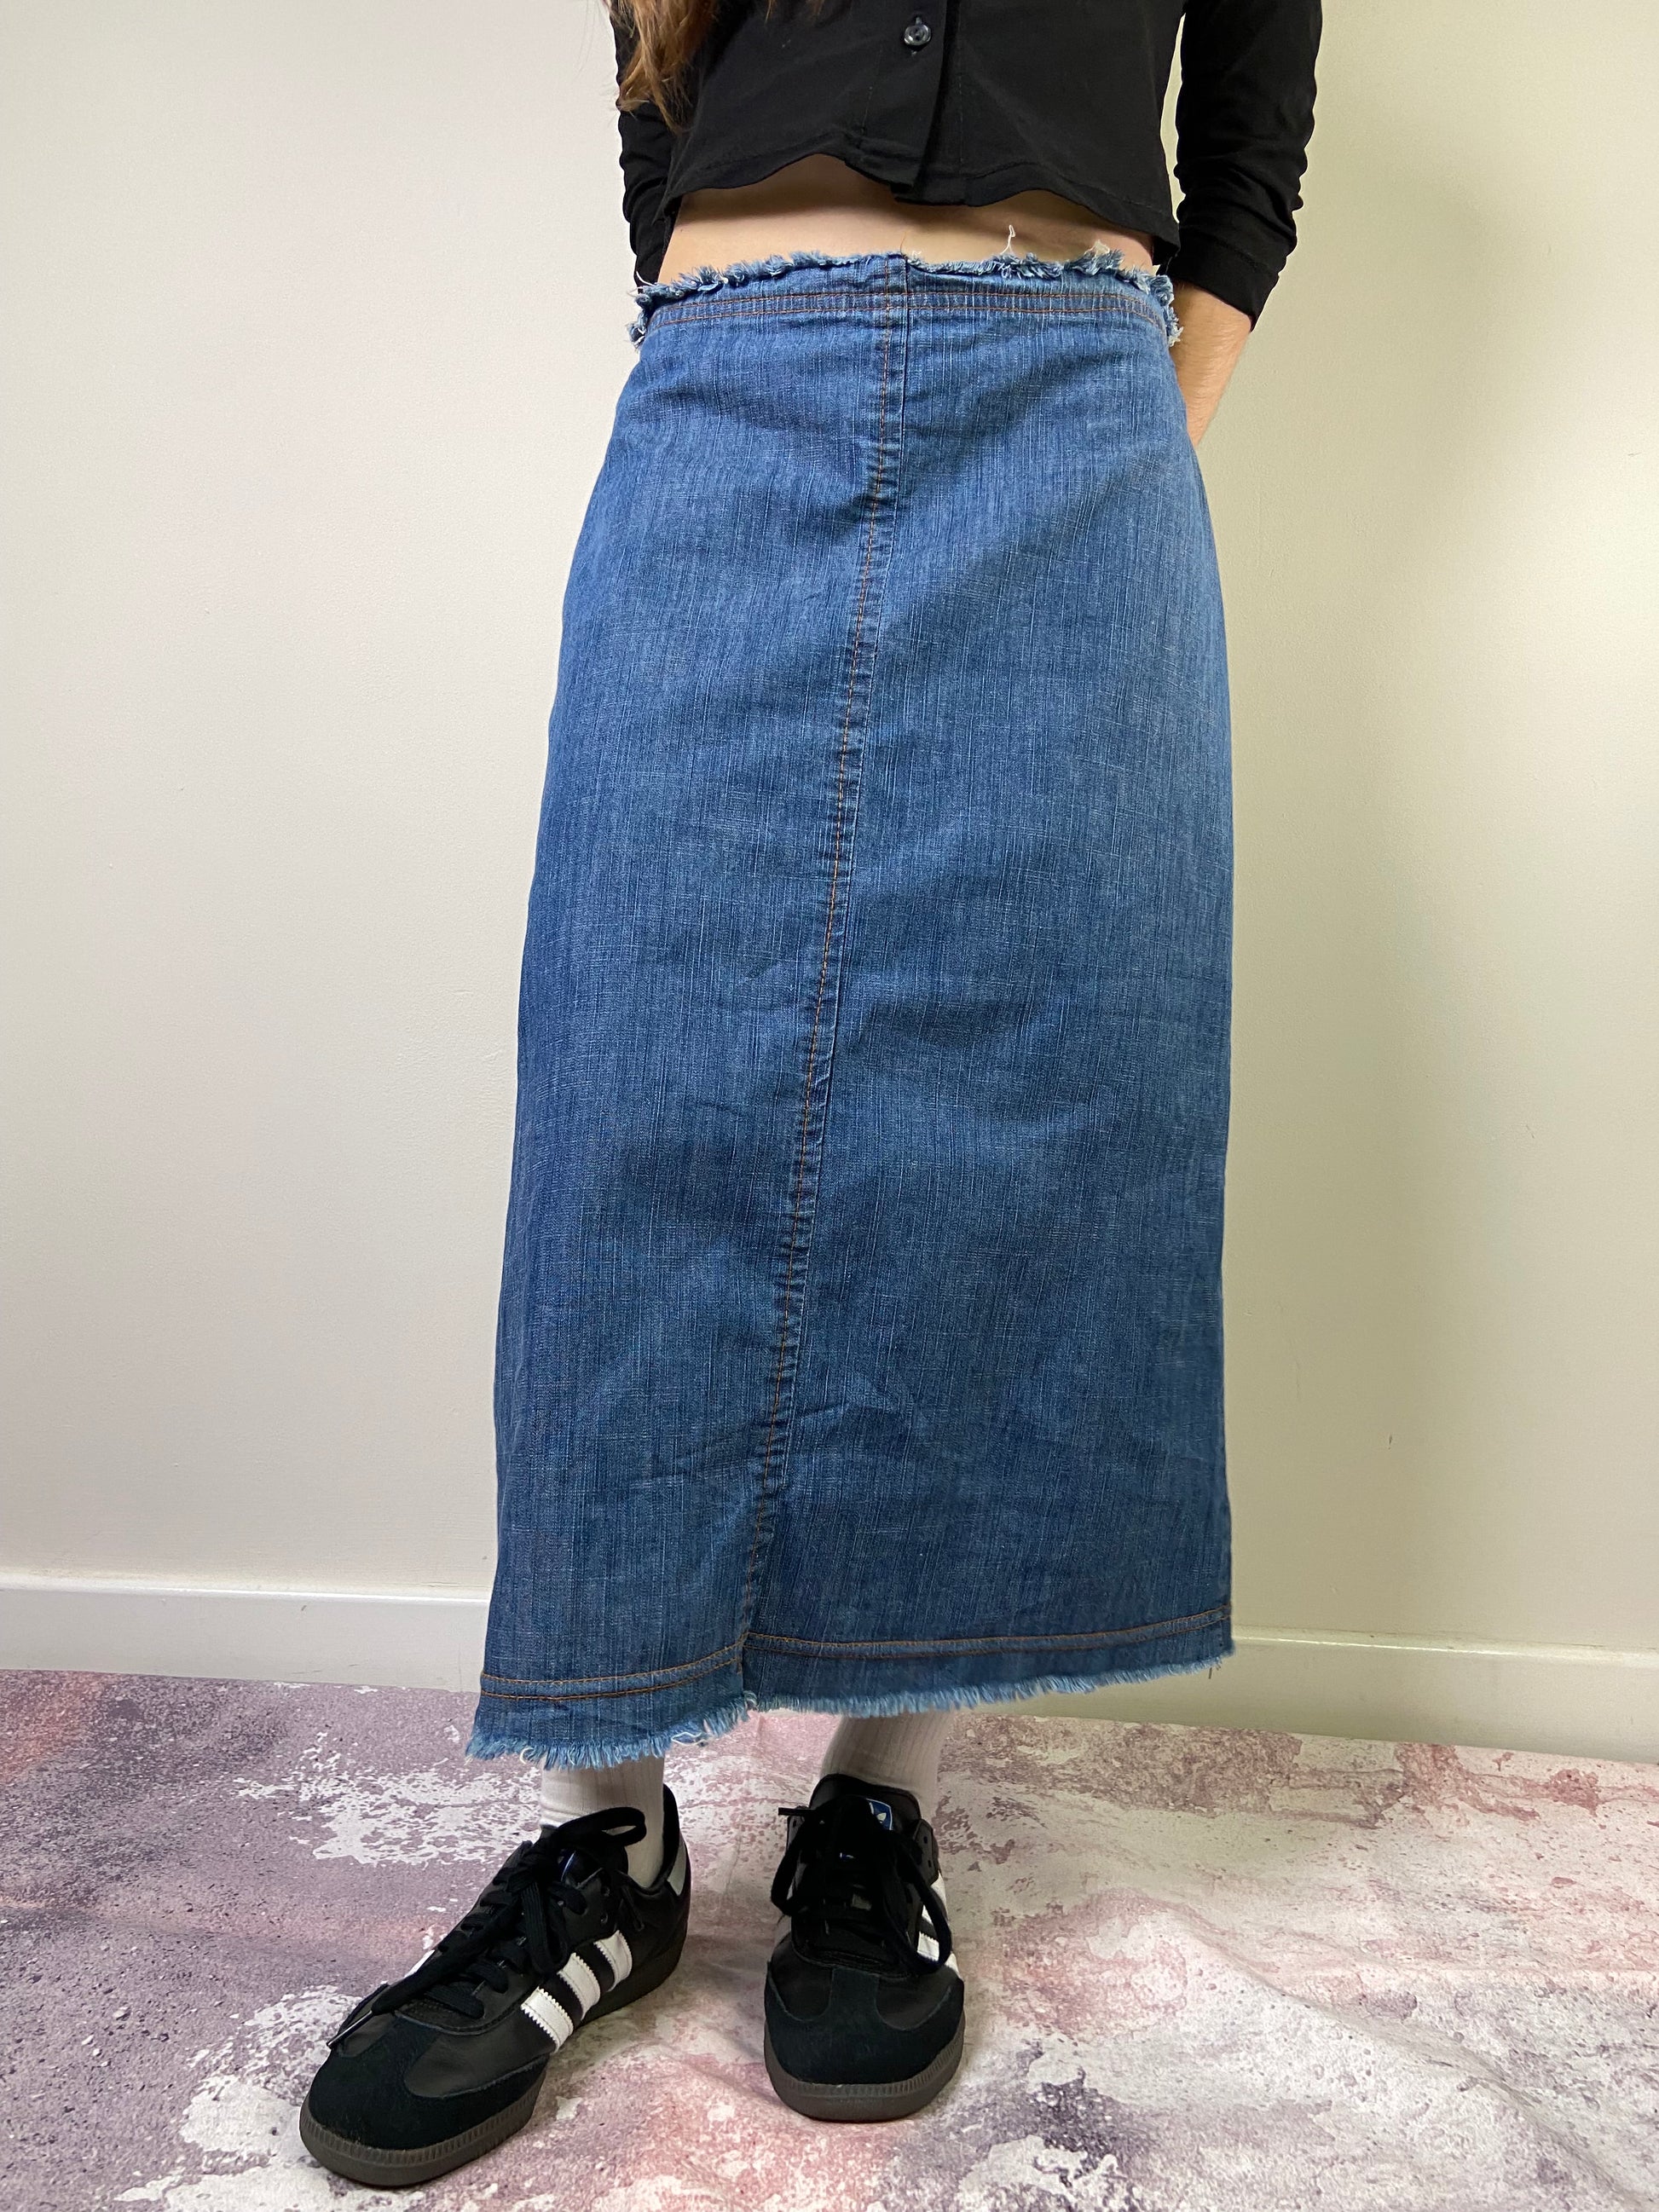 00's Long Denim Skirt - Size S/M - Funky Cat